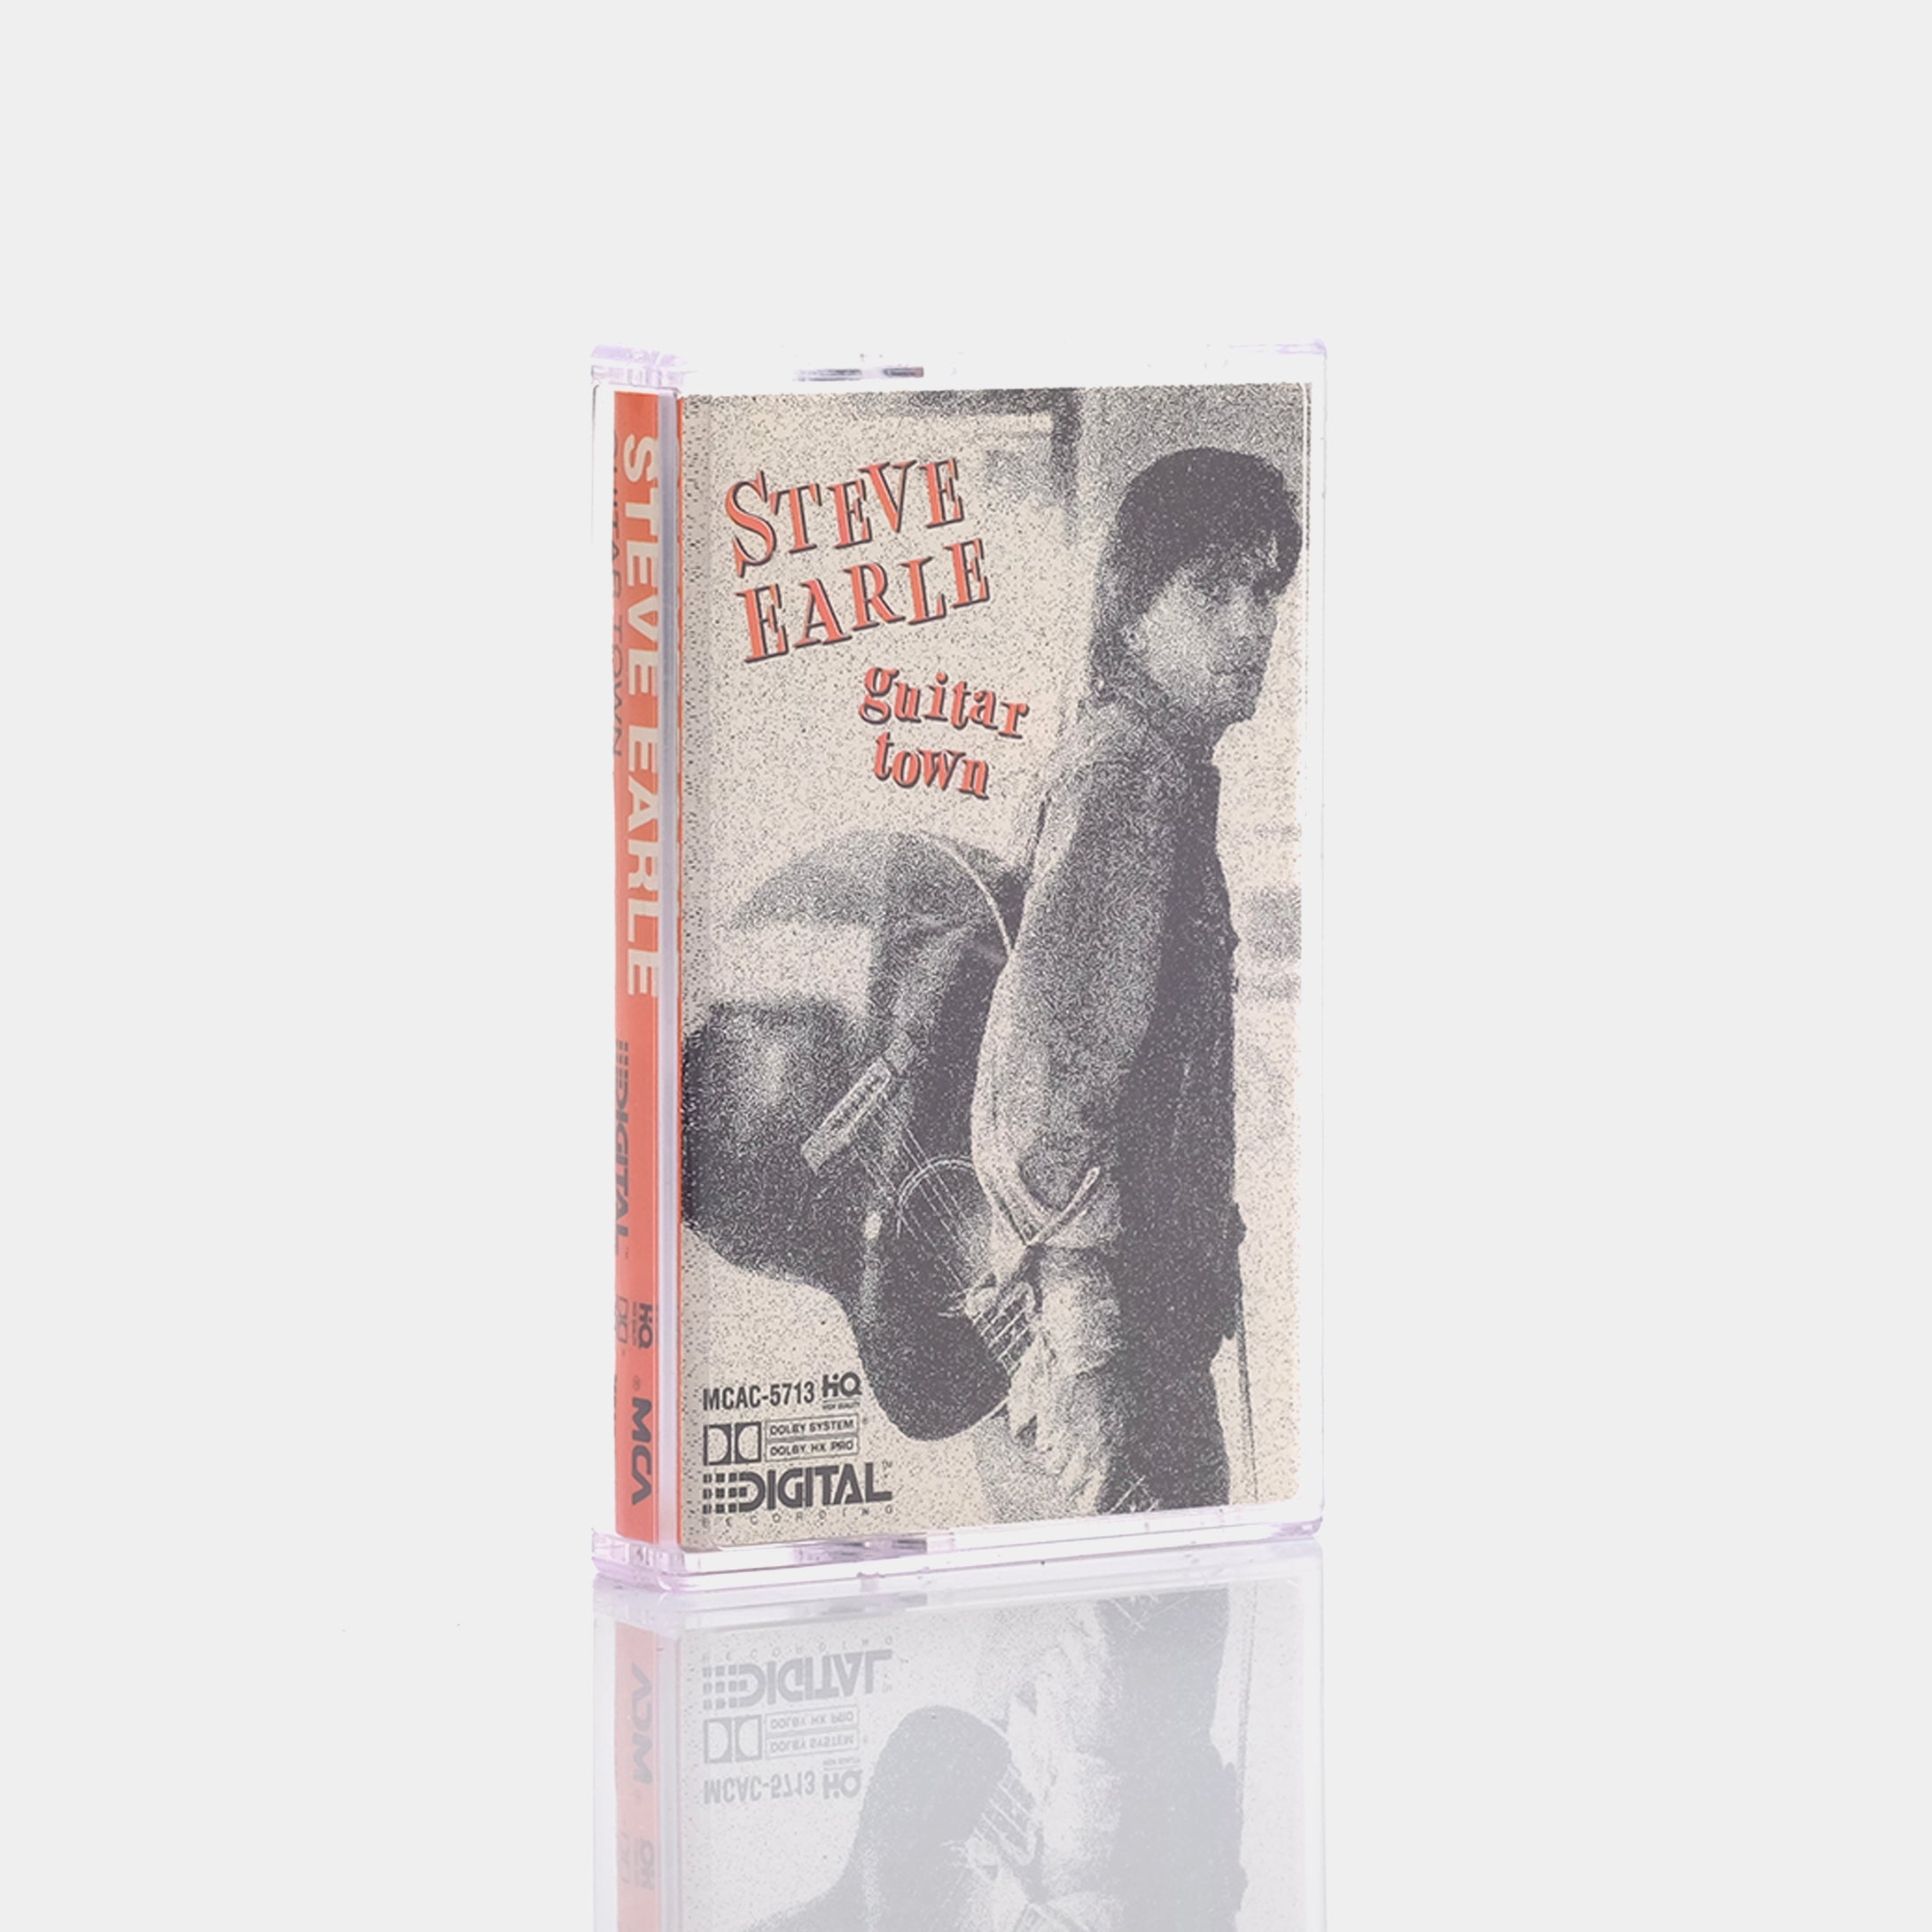 Steve Earle - Guitar Town Cassette Tape